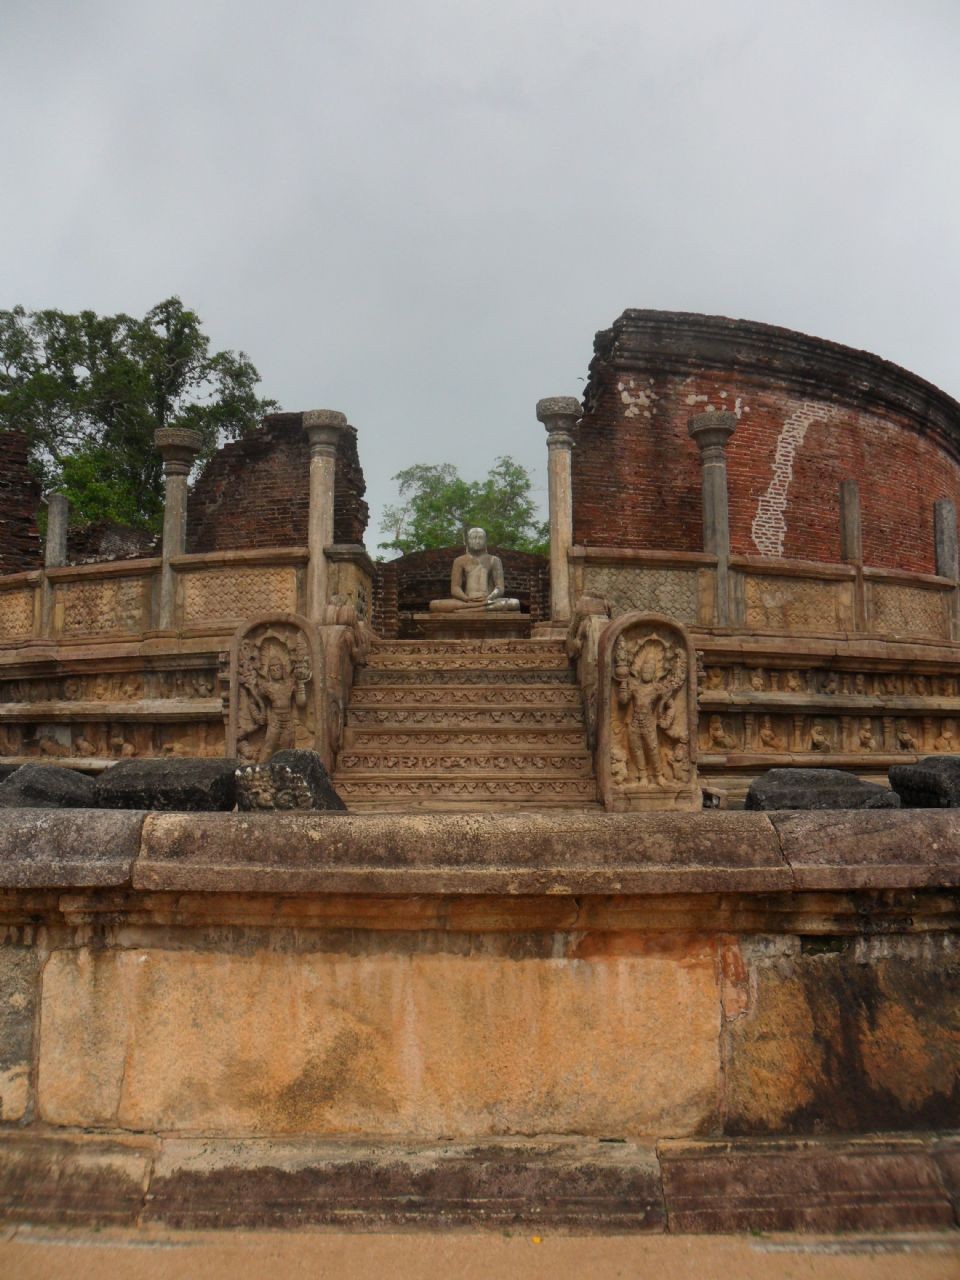 Visiting Polonnaruwa Gal Vihara: